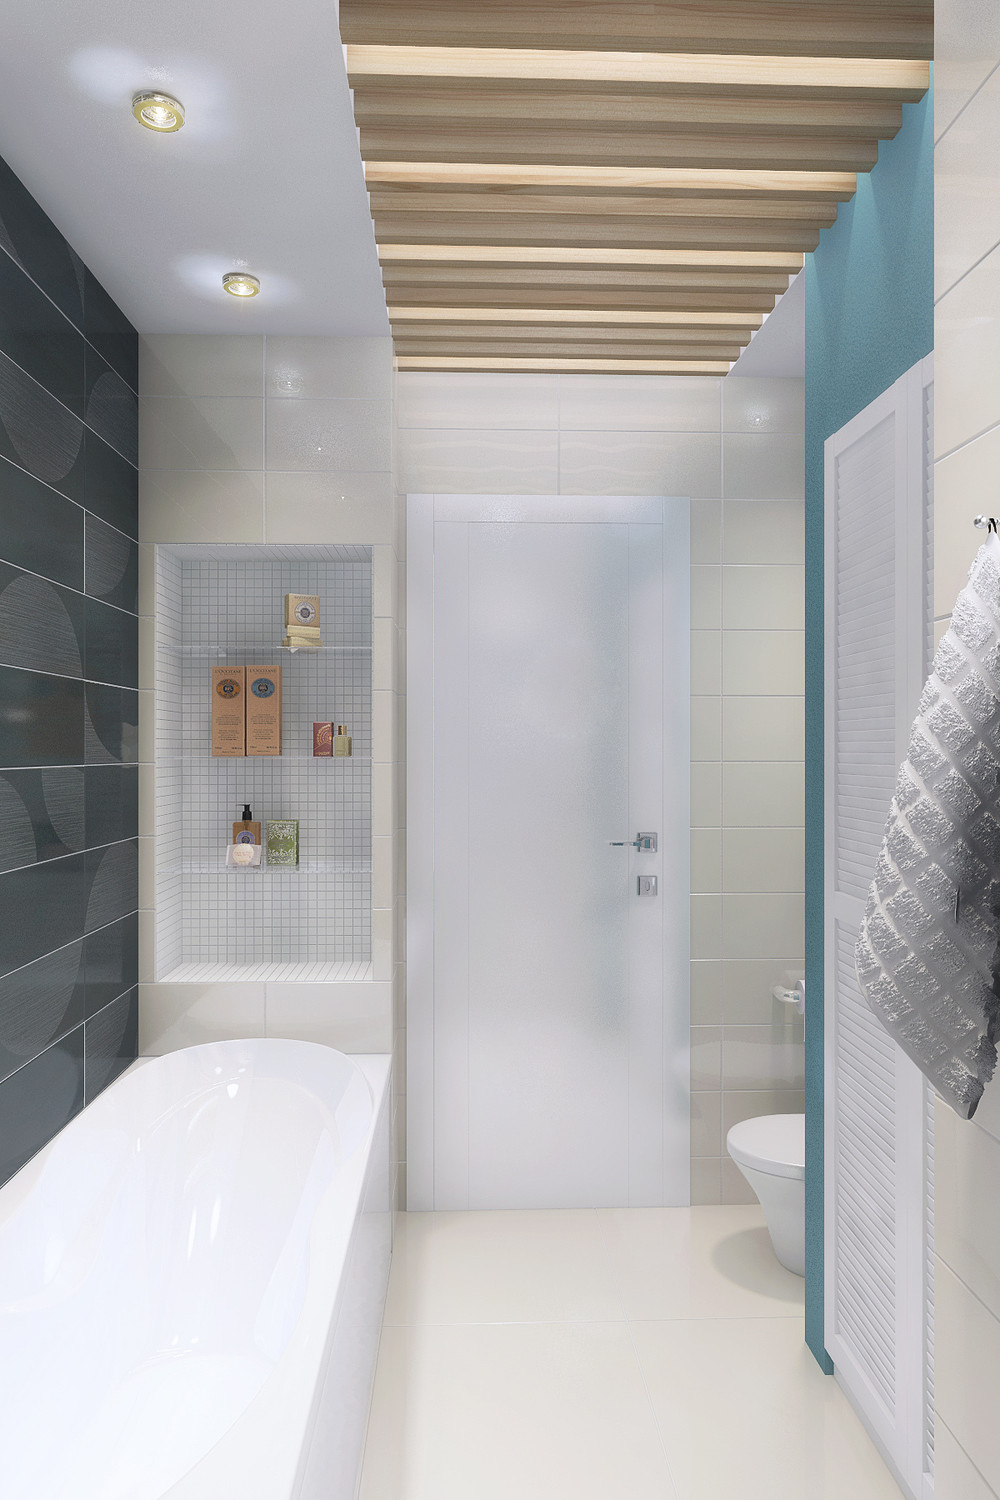 Wedo thiết kế nội thất tiện nghi và hoàn hảo cho phòng tắm trong ngôi nhà diện tích nhỏ